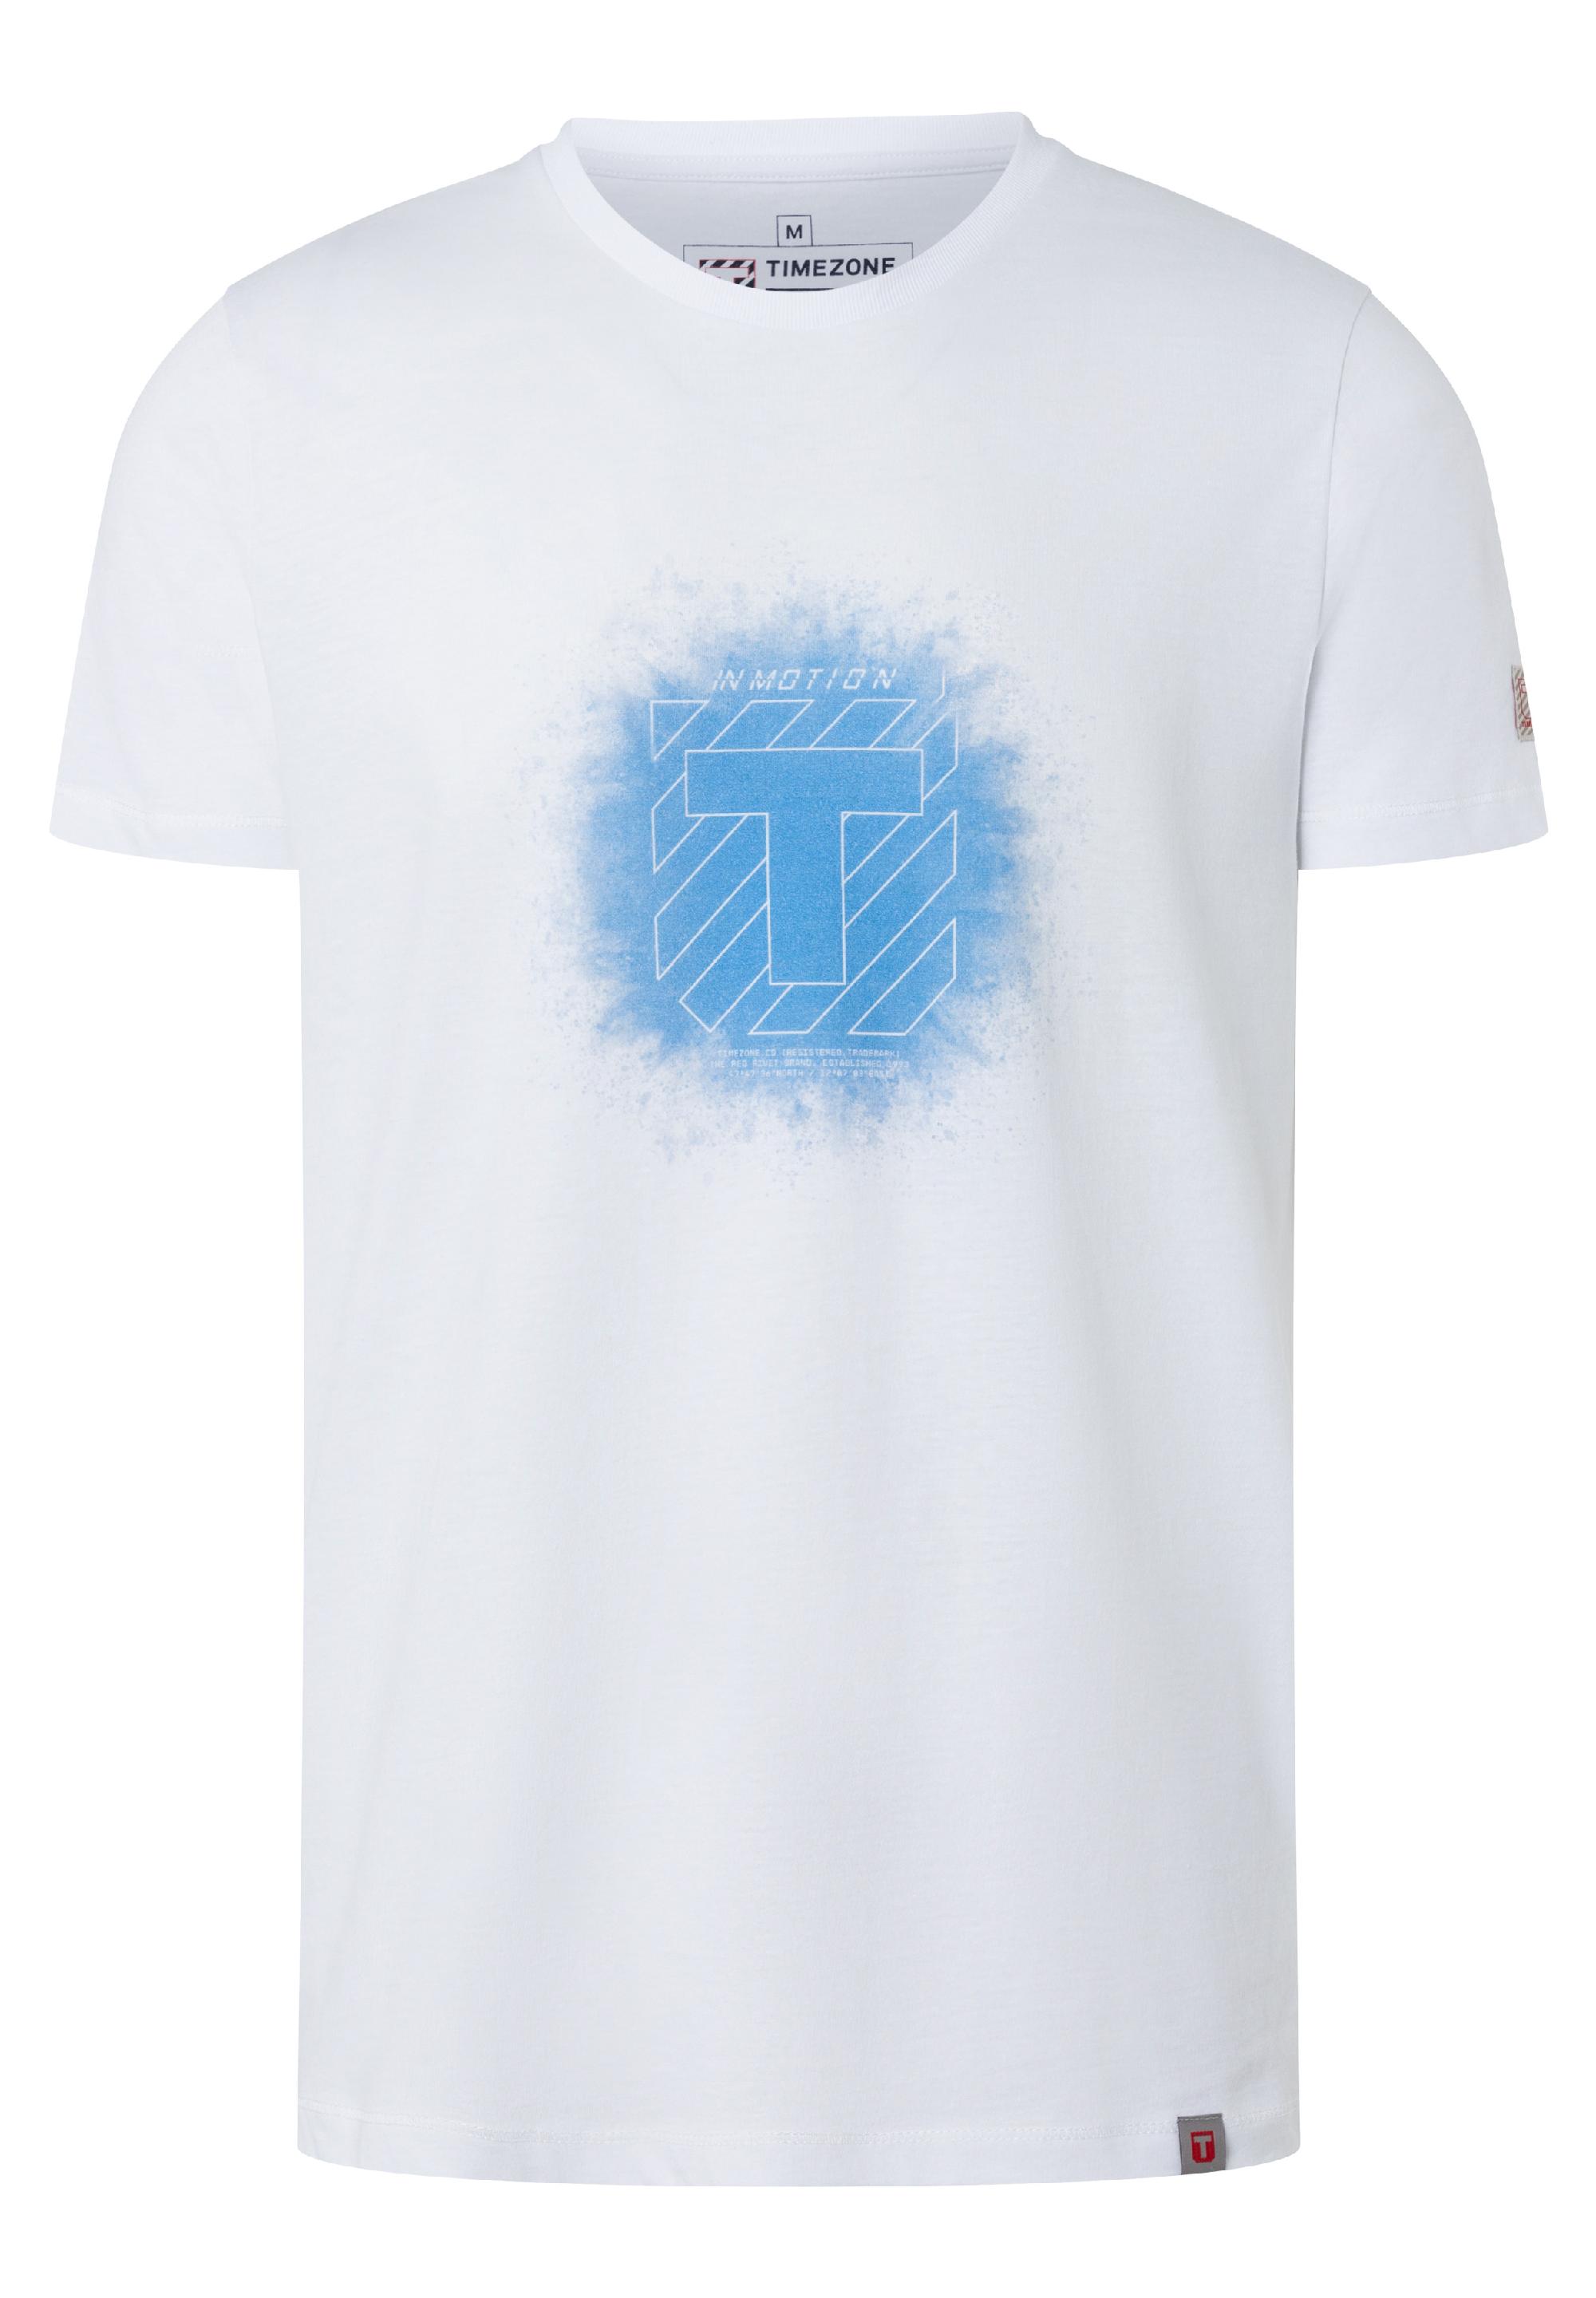 Splash Print T-Shirt